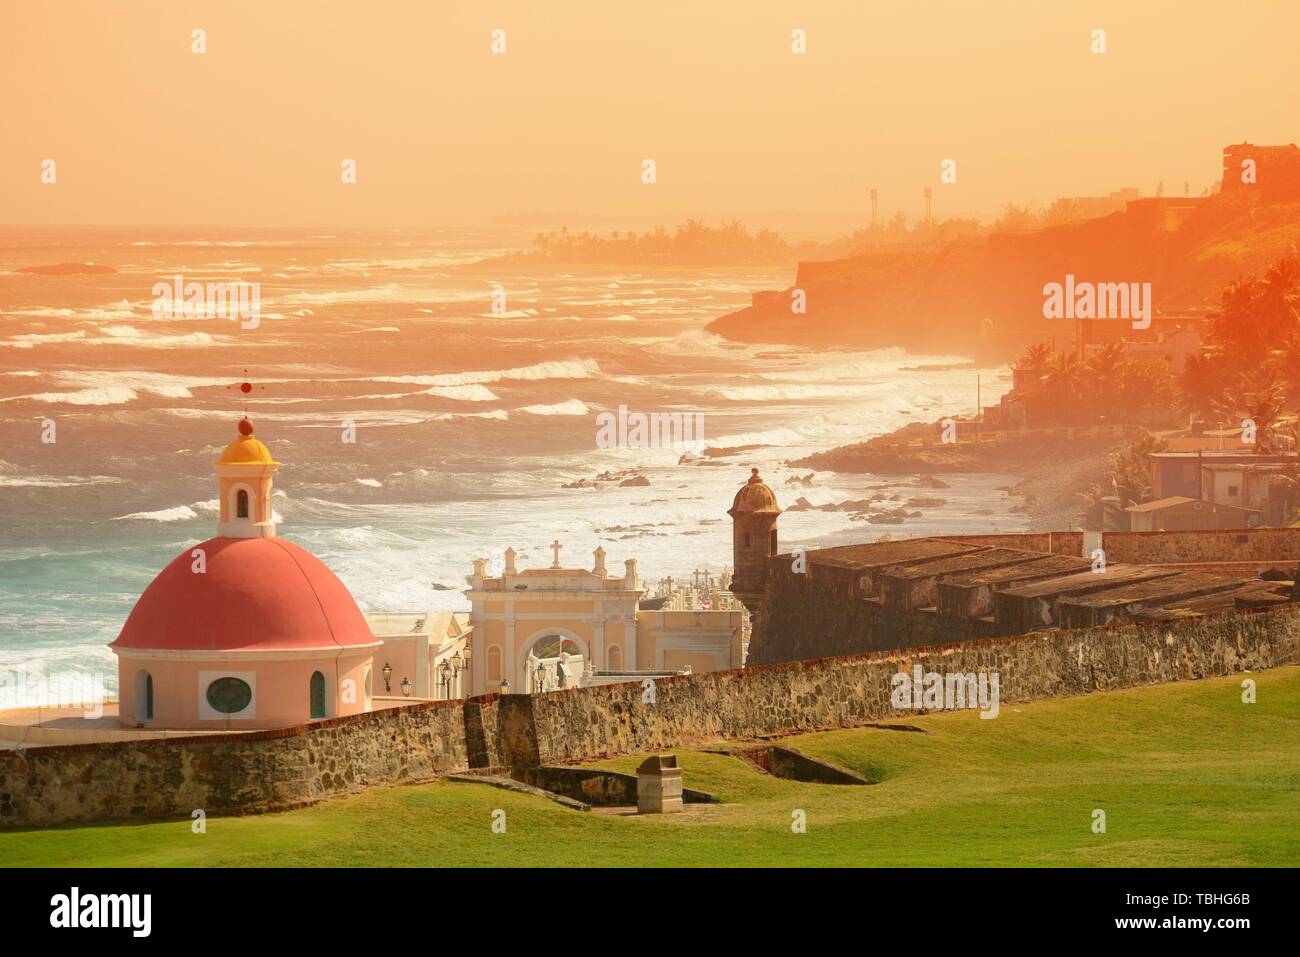 Le vieux San Juan vue mer avec des bâtiments dans ton rouge Banque D'Images